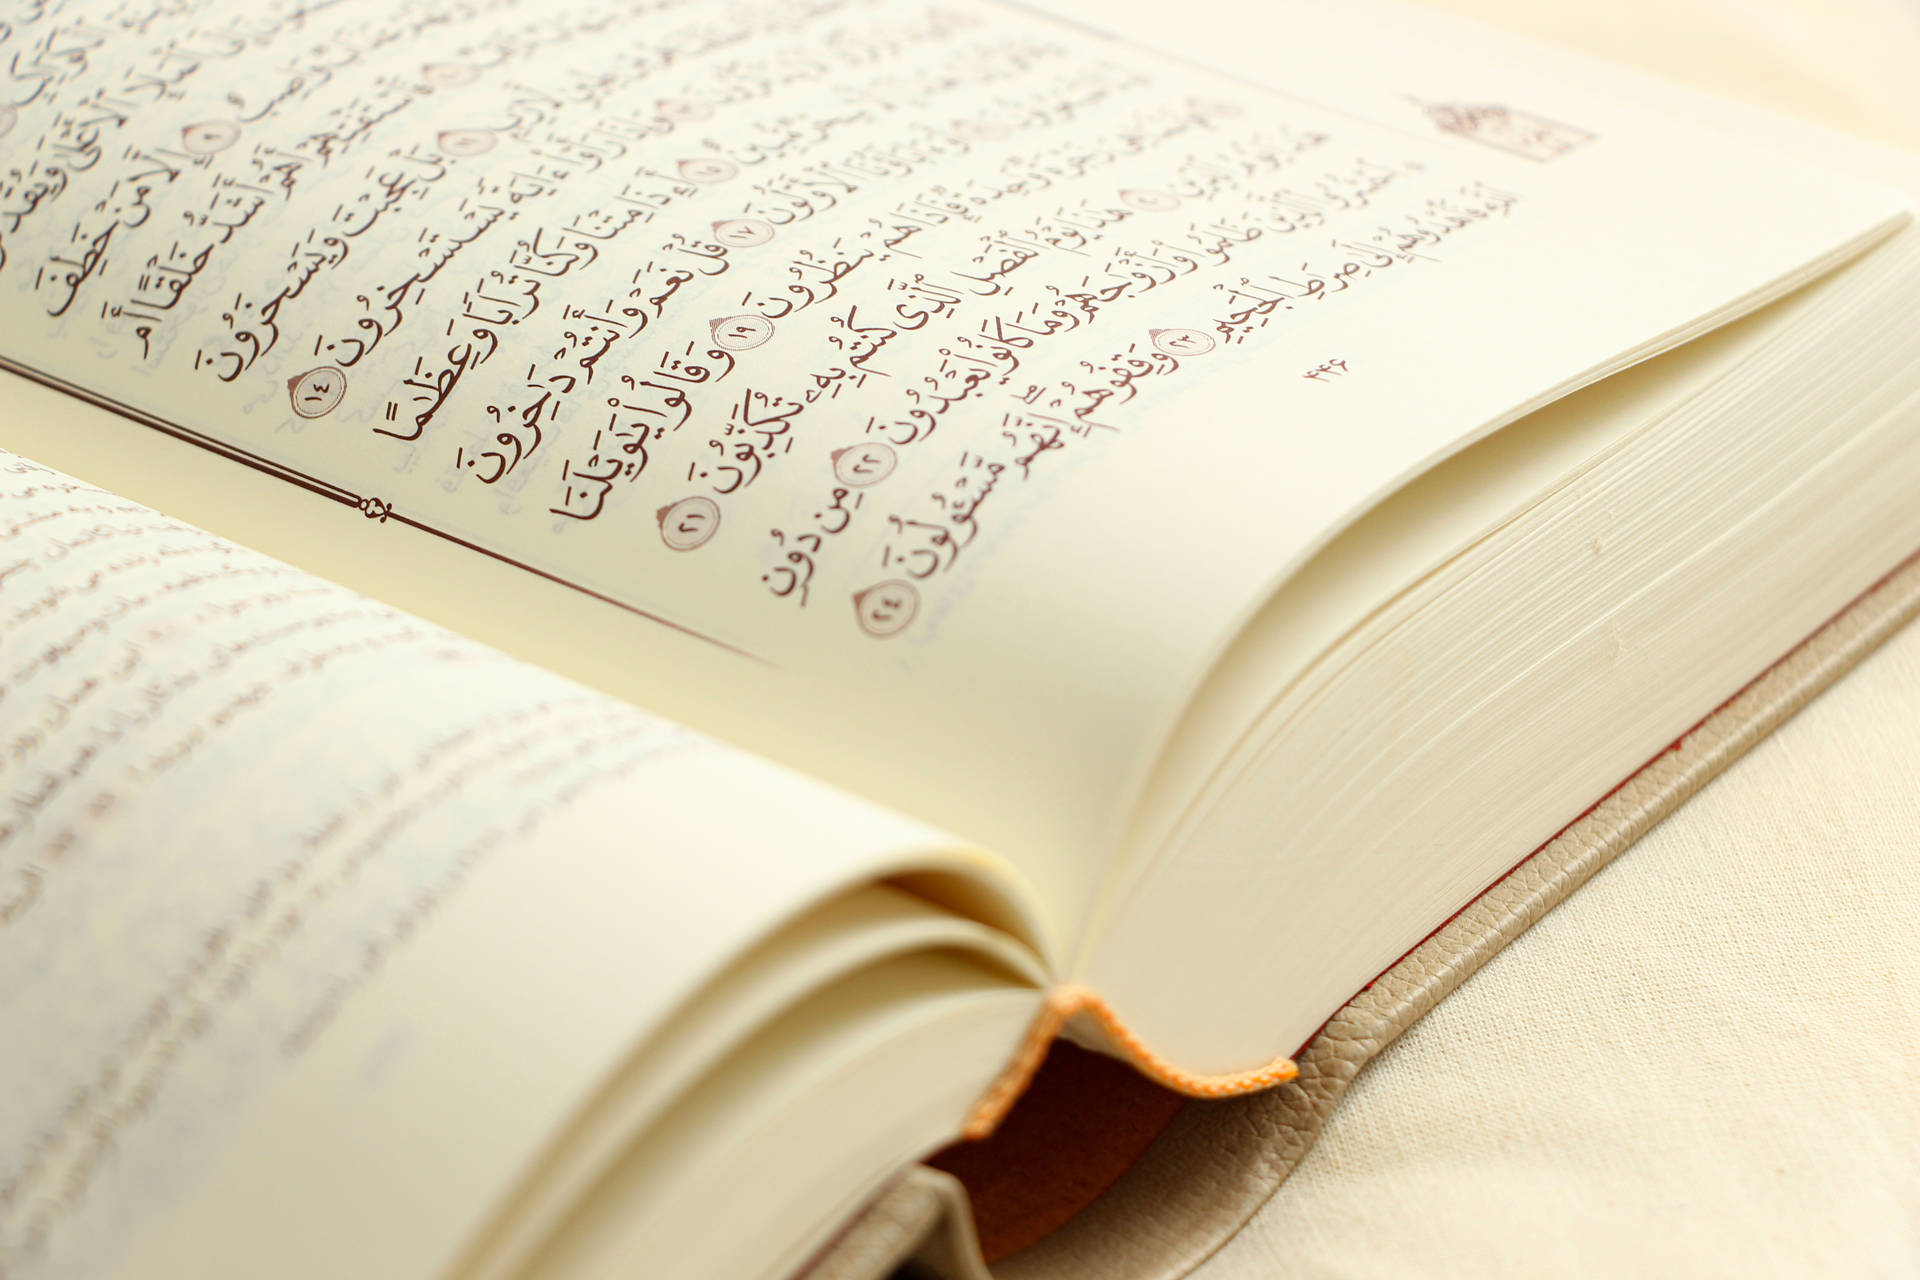 Quran Book Of Allah Wallpaper